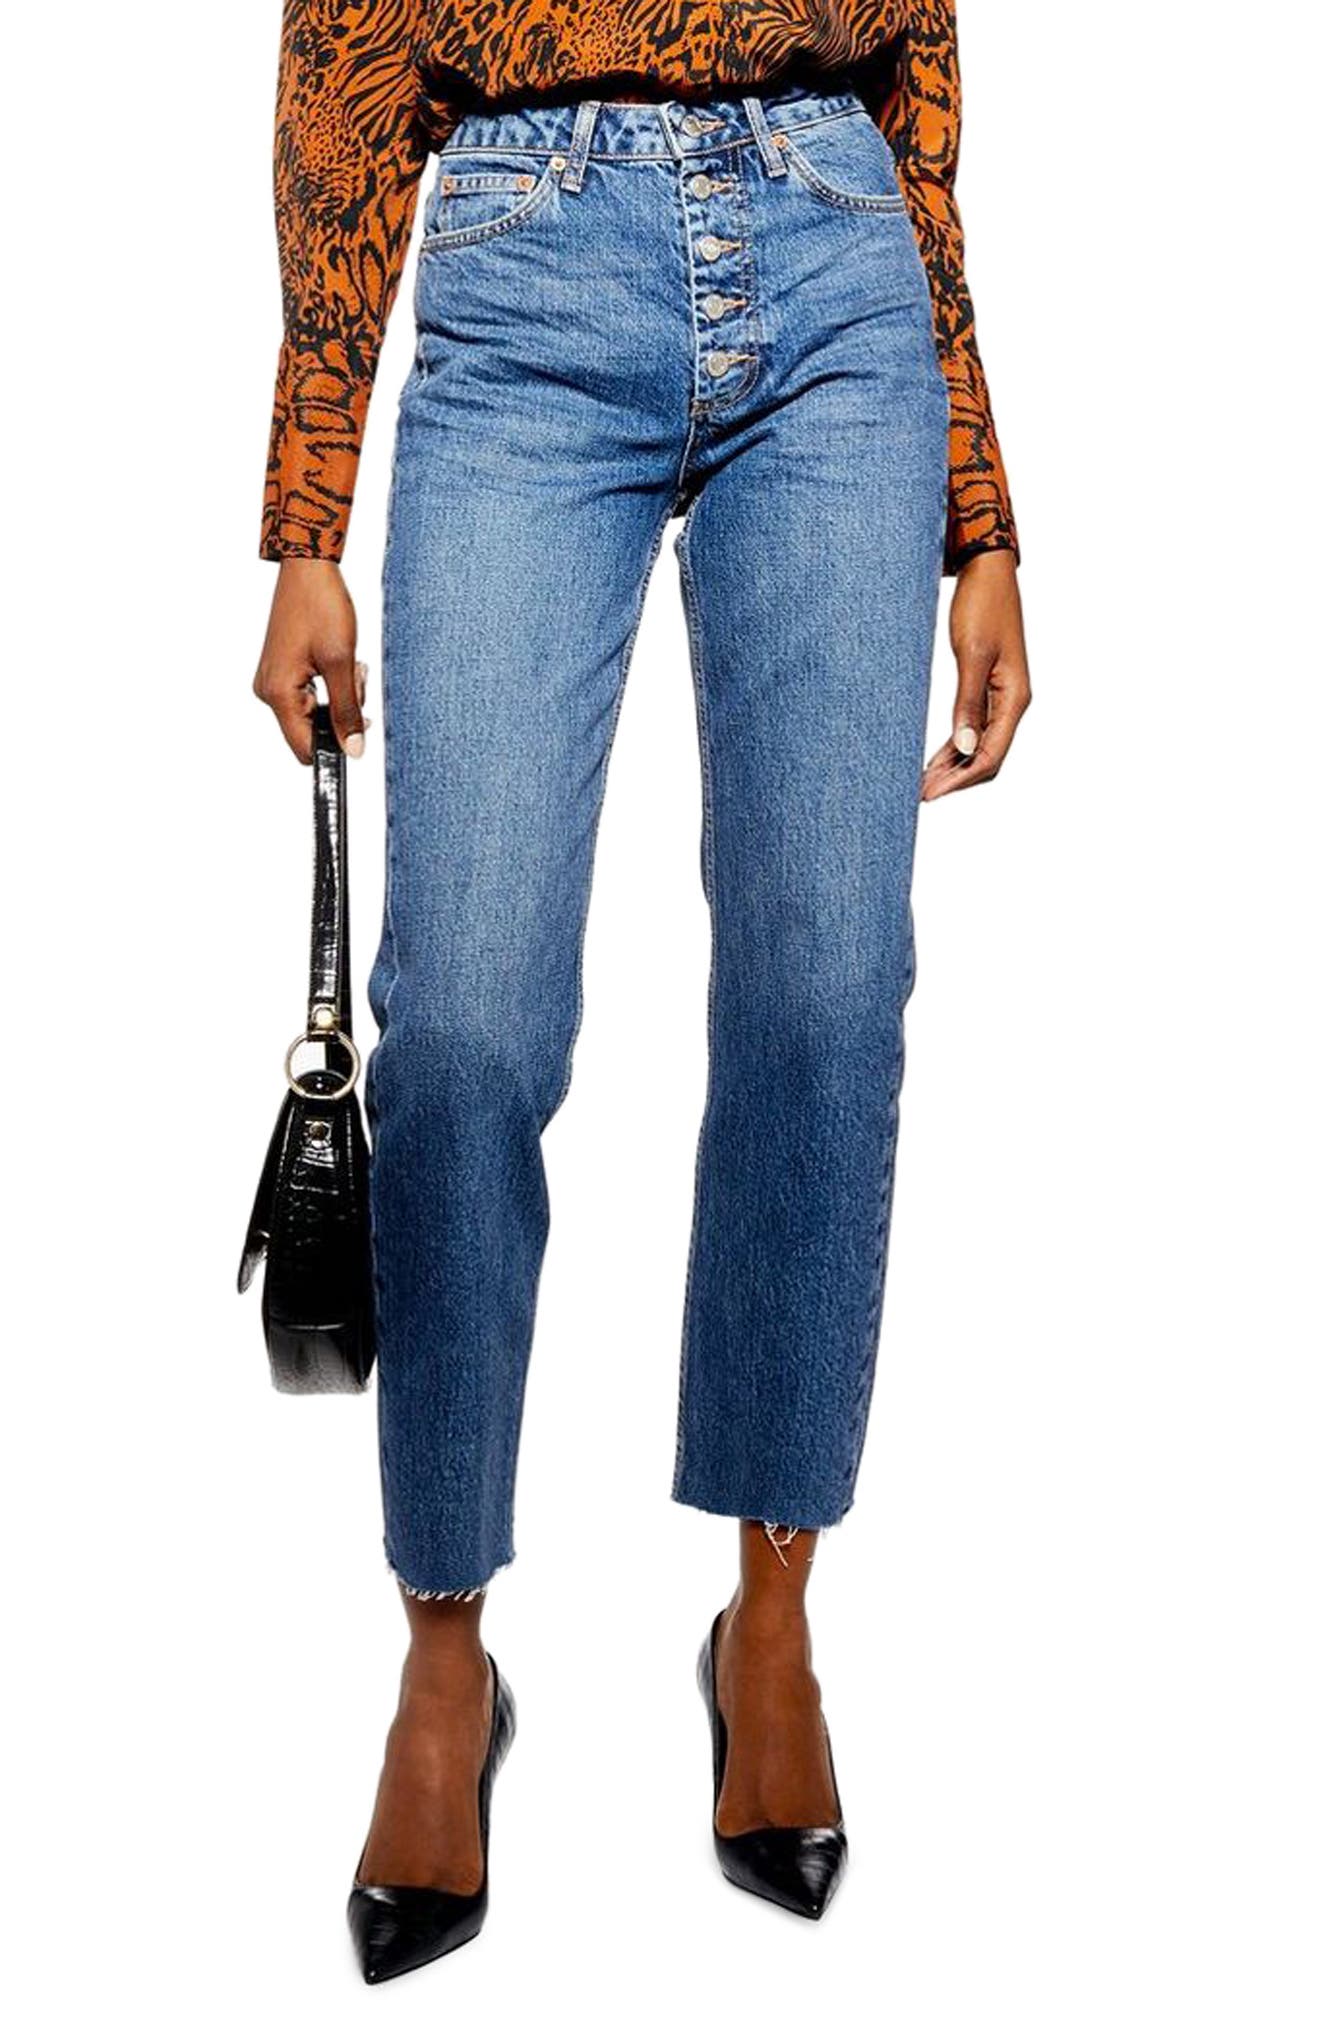 nordstrom topshop jeans